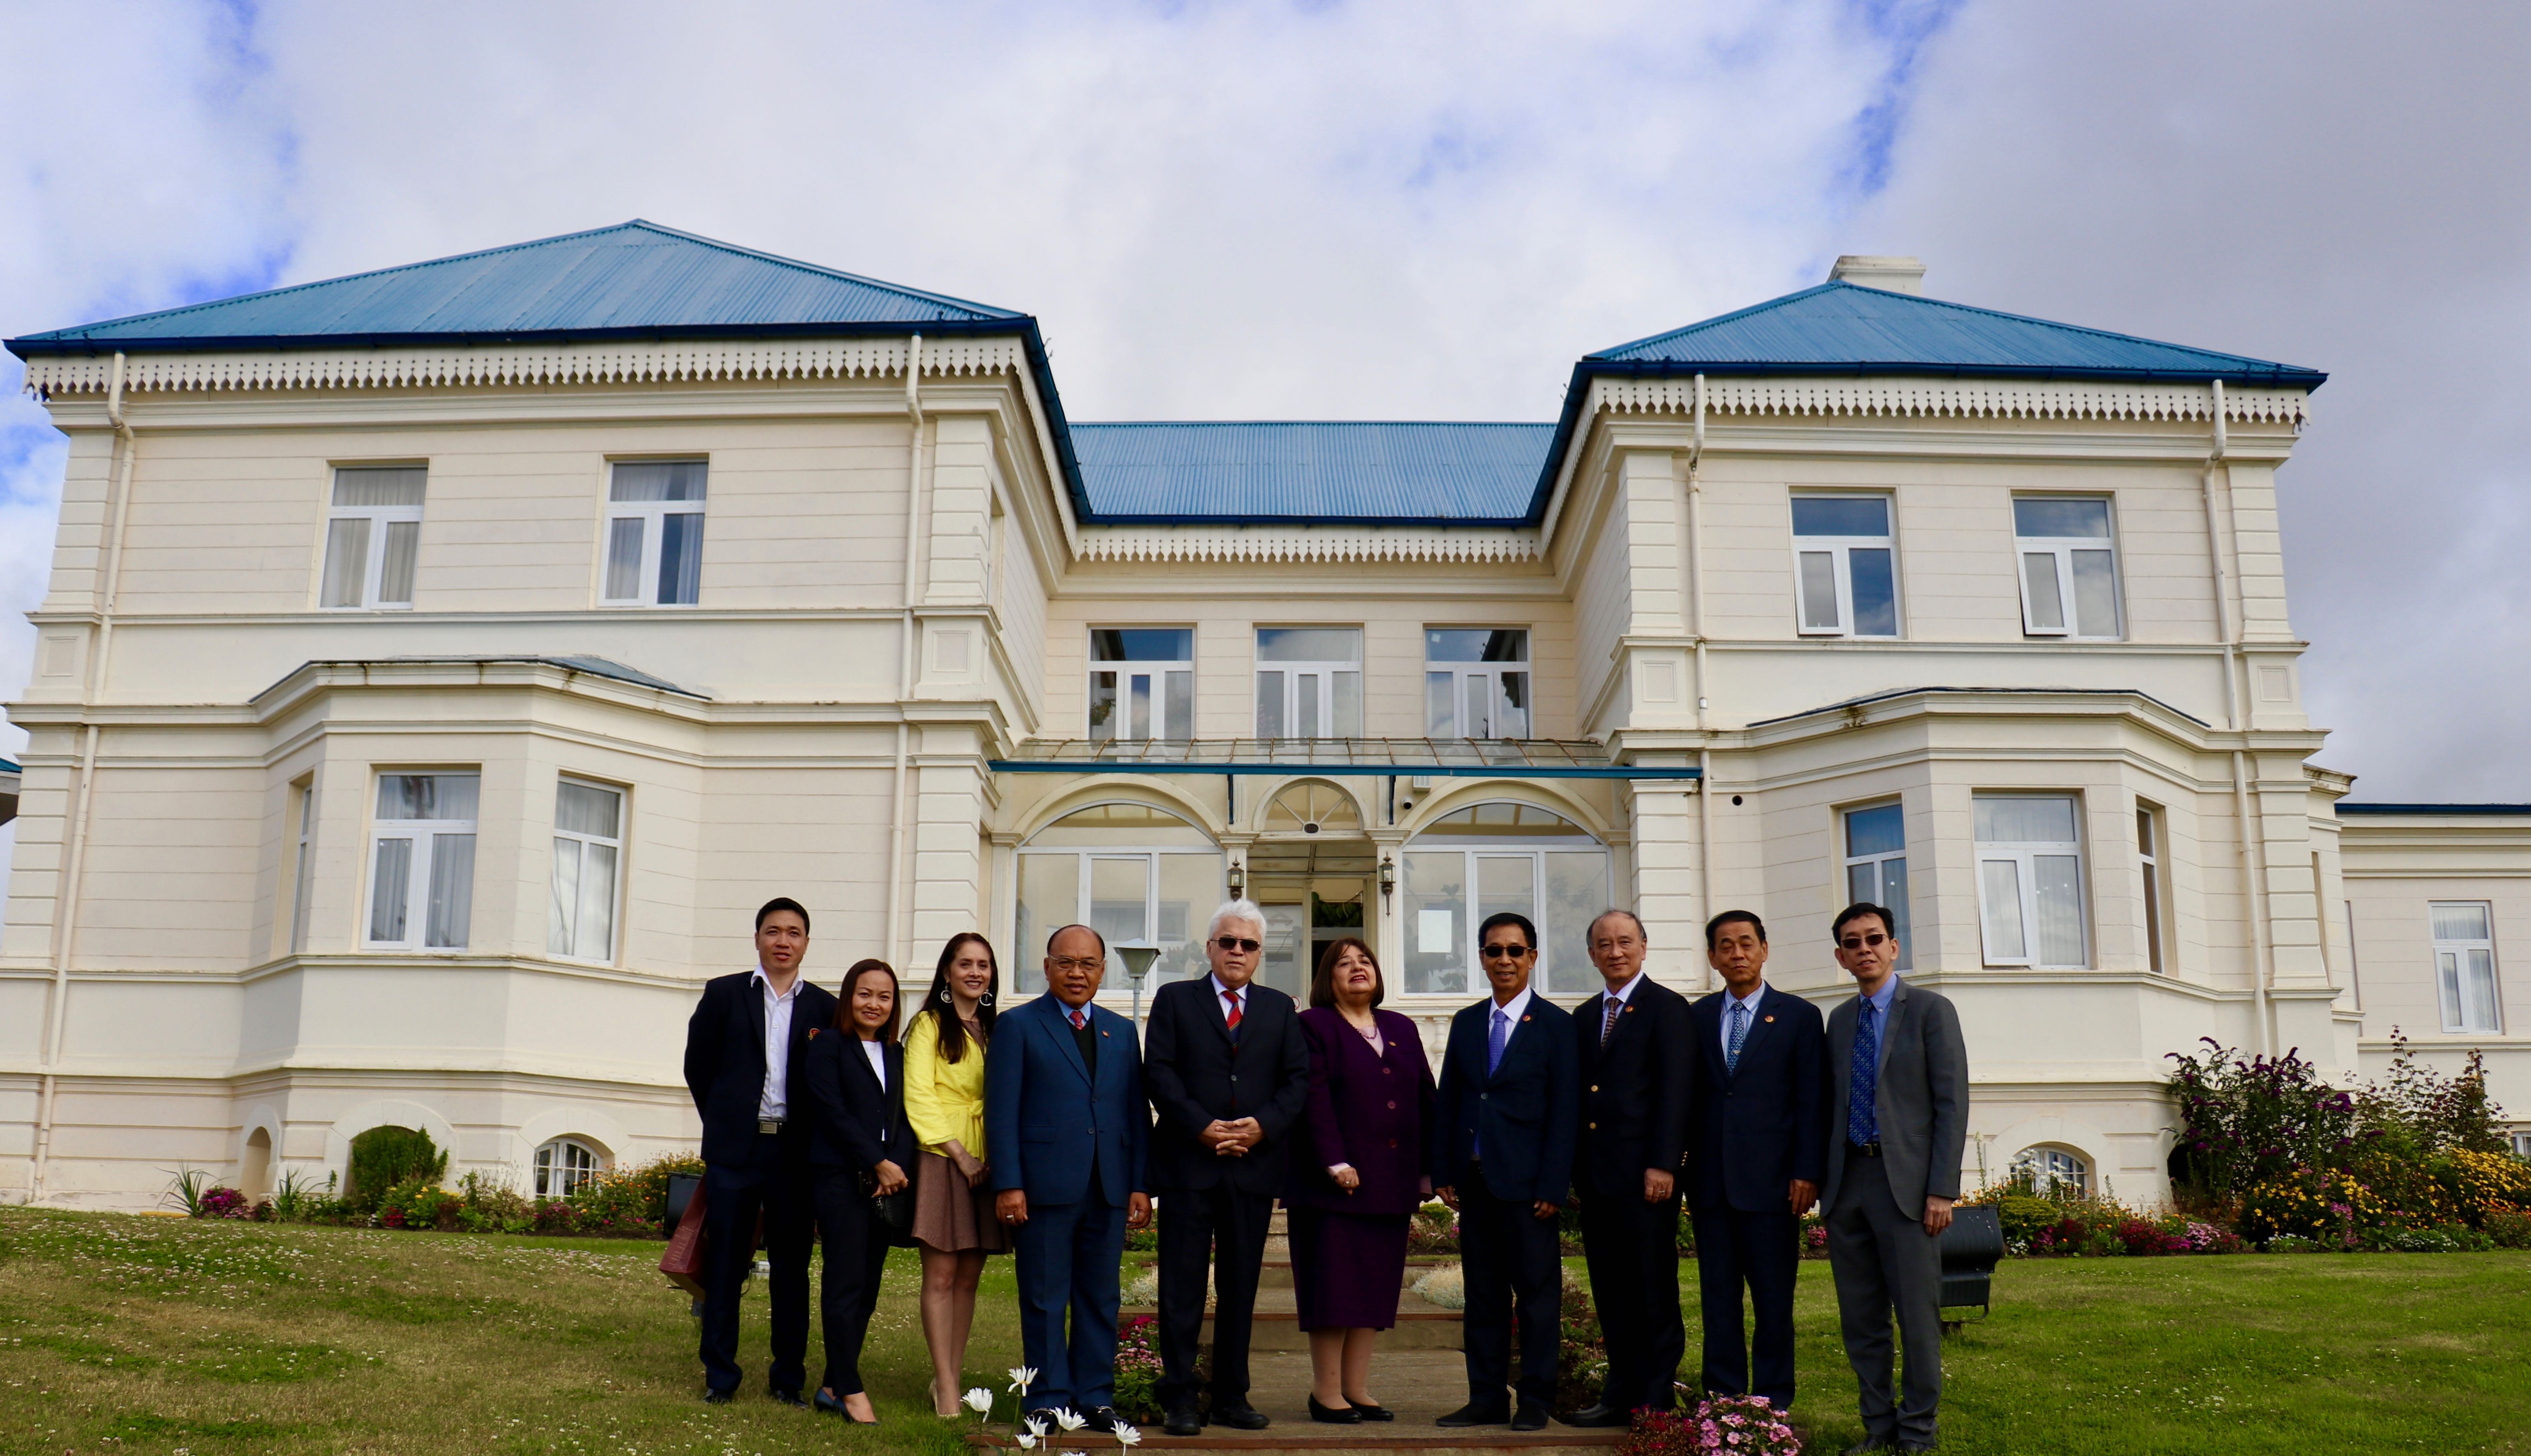 Presidenta (s) de la Corte de Apelaciones de Punta Arenas recibe visita protocolar de la Corte Constitucional del Reino de Tailandia